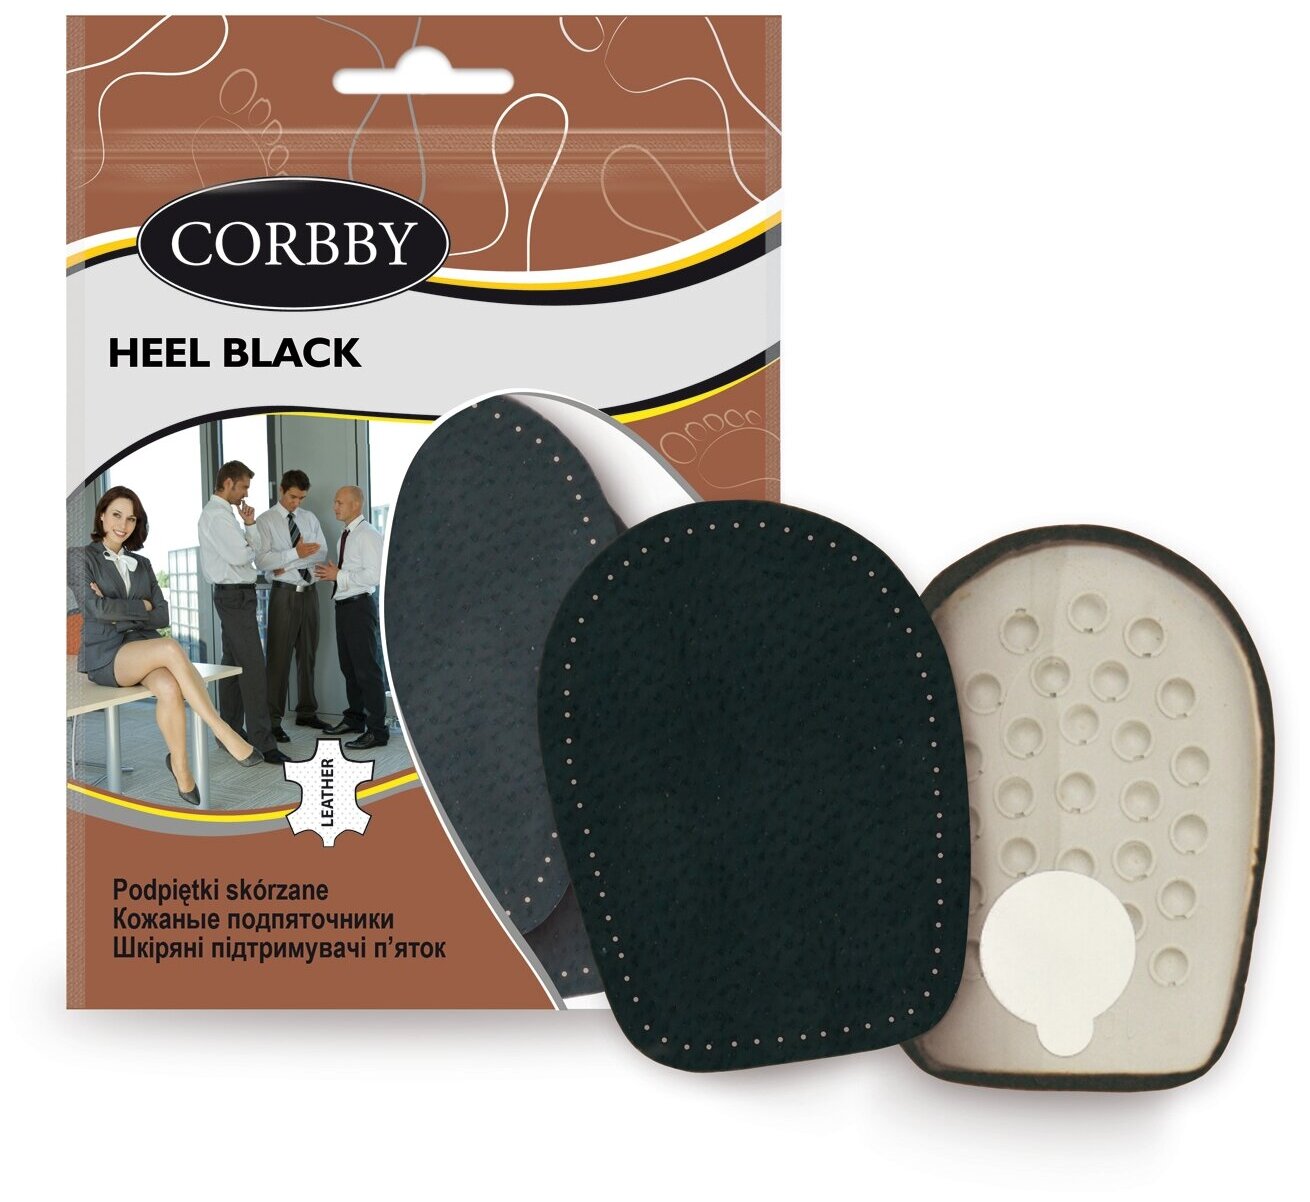 Corbby HALF BLACK полустельки под мысок из высококачественной натуральной кожи. Размер 39/40